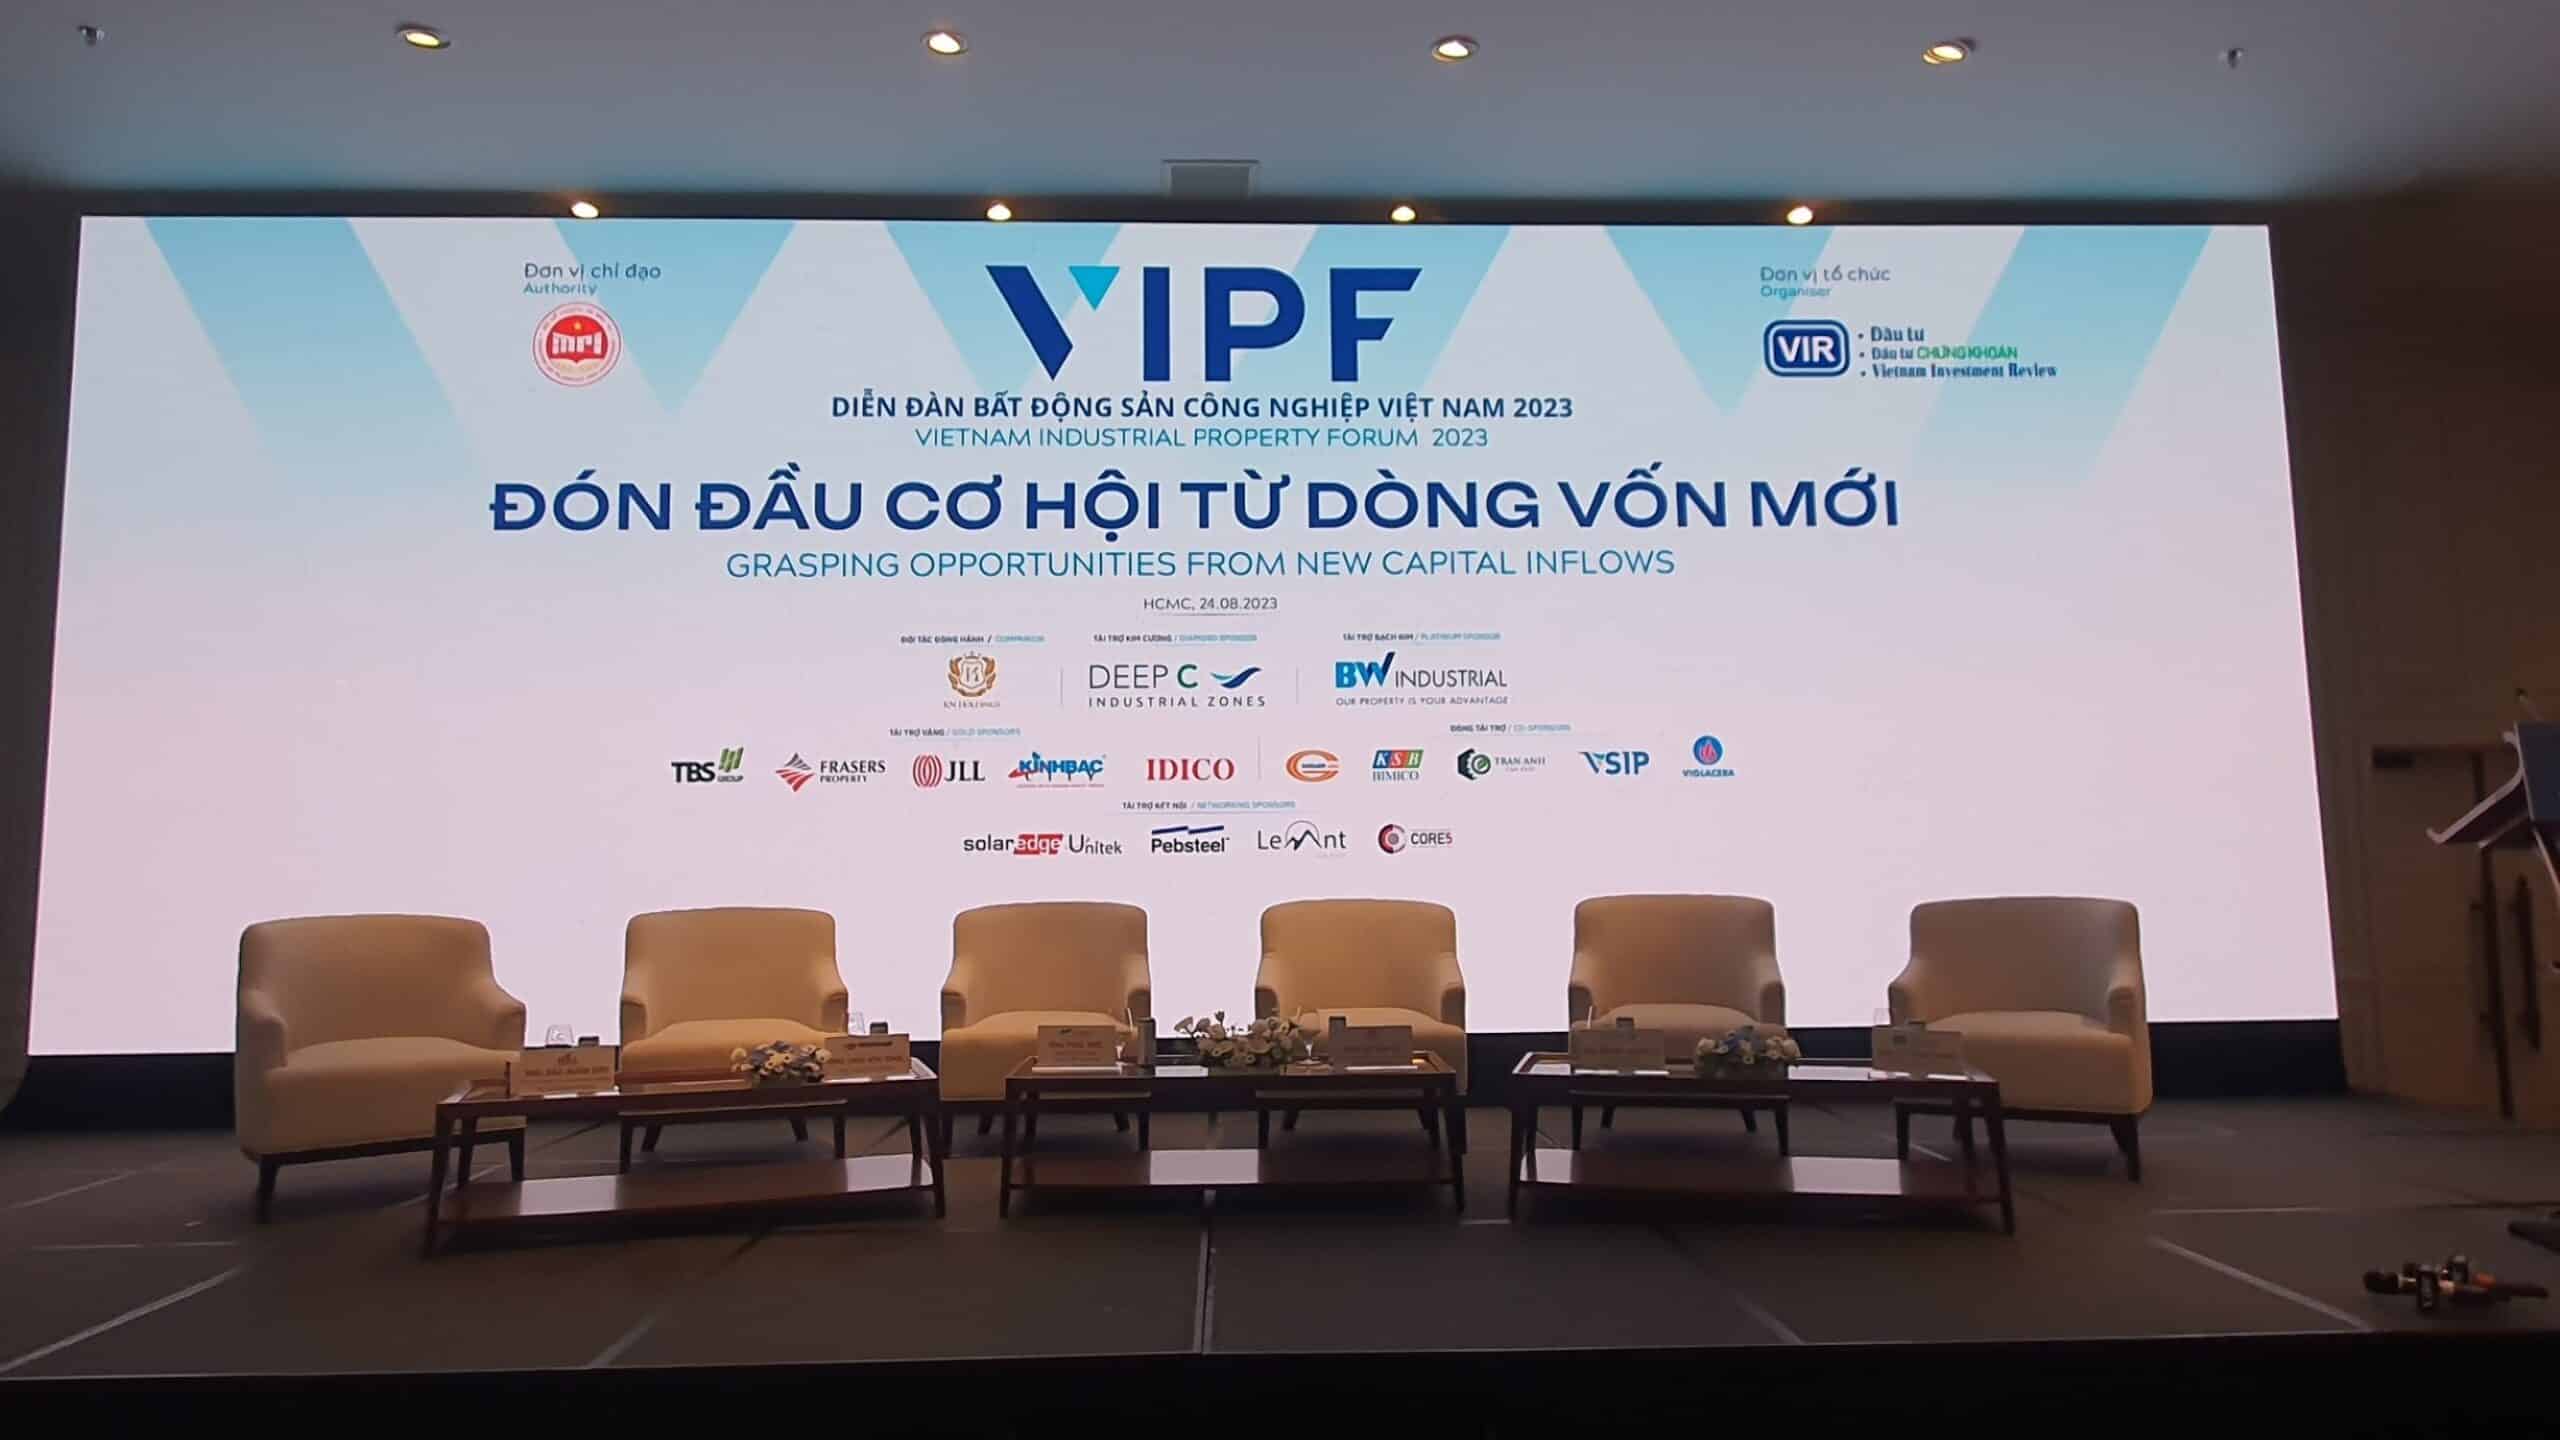 Diễn đàn Bất động sản công nghiệp Việt Nam sẽ diễn ra với 2 phiên thảo luận chuyên sâu gồm Phiên 1: Nhận diện các dòng vốn mới và Phiên 2: Nắm bắt cơ hội.